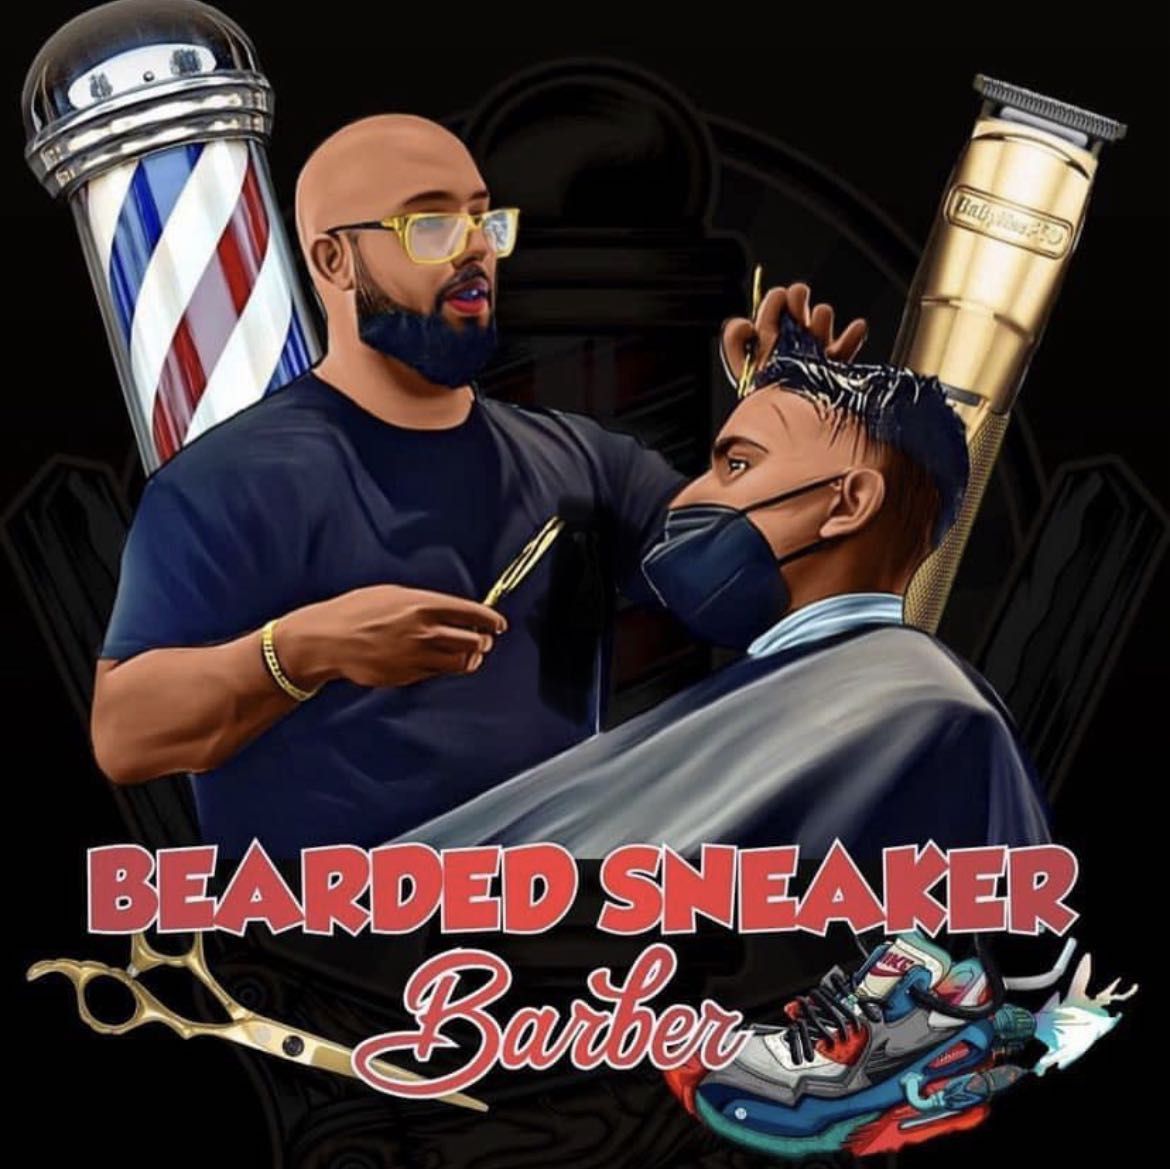 Bearded Sneaker Barber, 6545 Cortland Ave, Allen Park, 48101